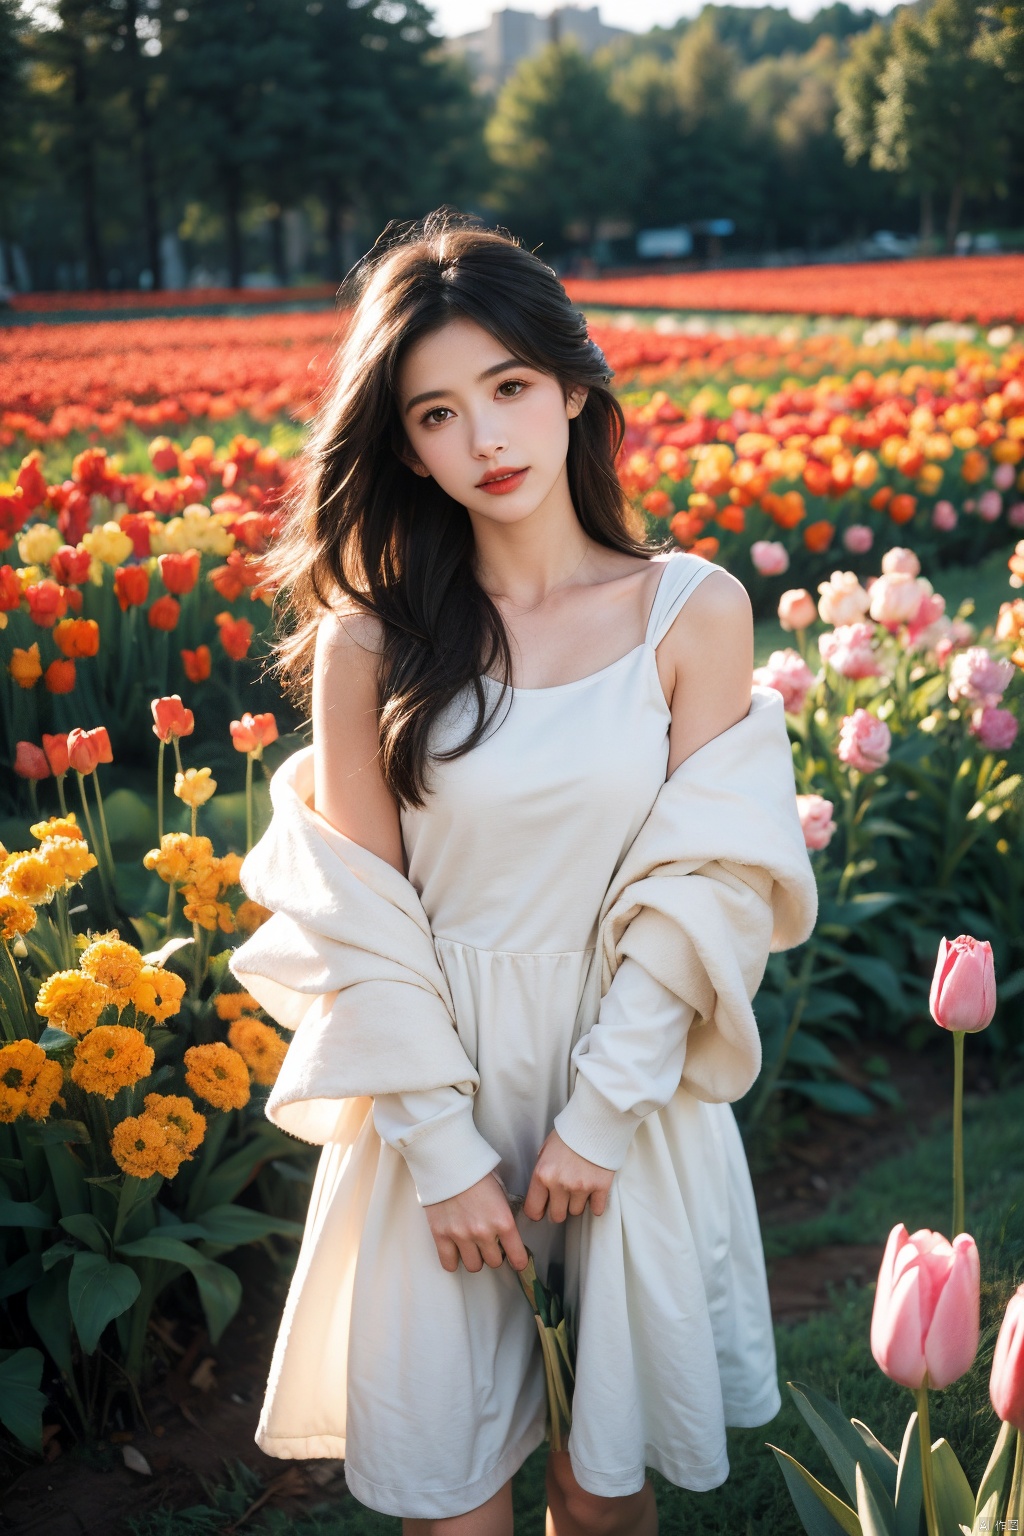  Enhanced, masterpiece, 16K, a rude girl, Solo, Flower Field, tulip, sufei